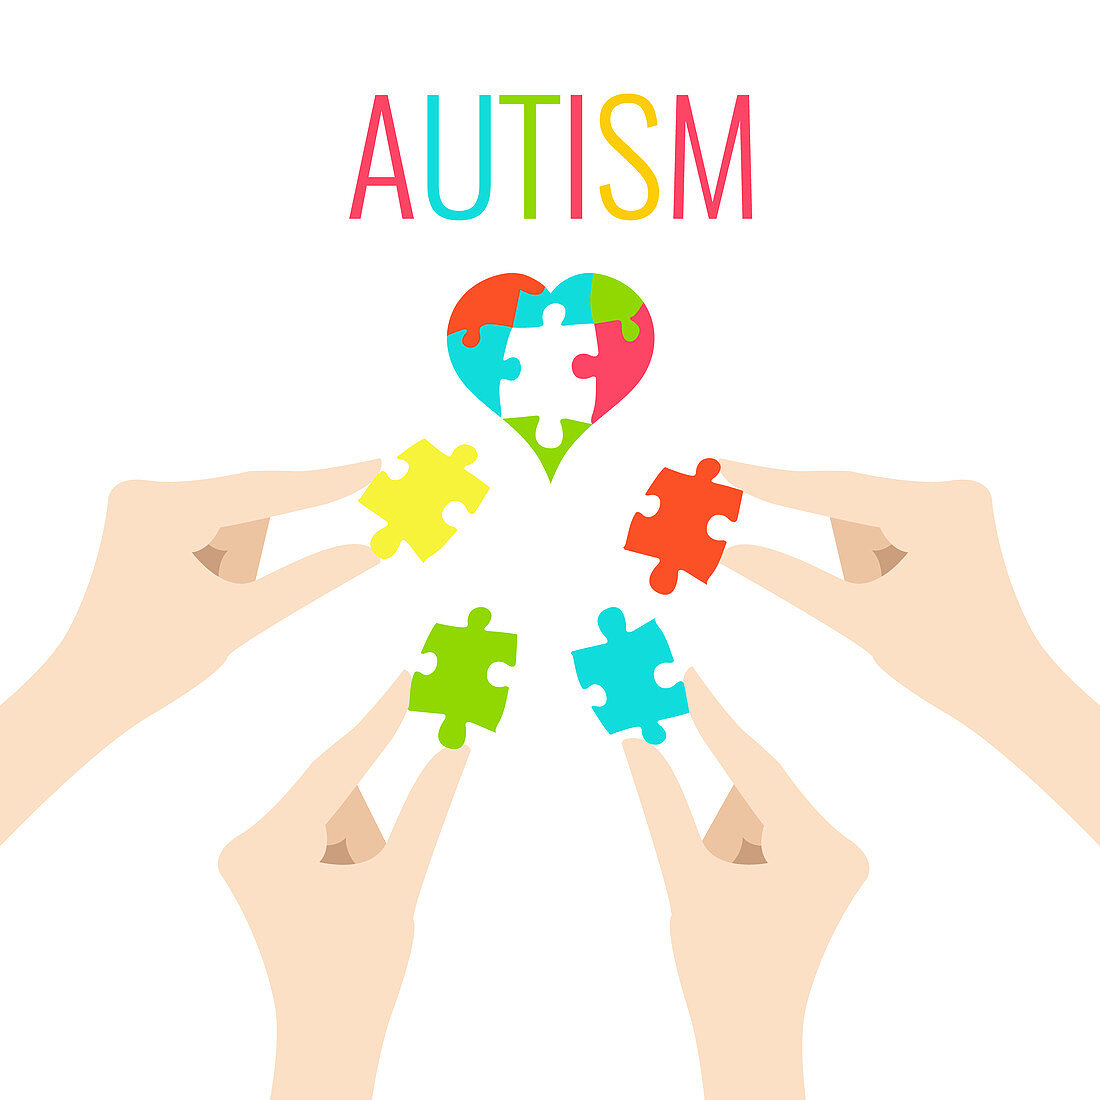 Autism awareness, conceptual illustration